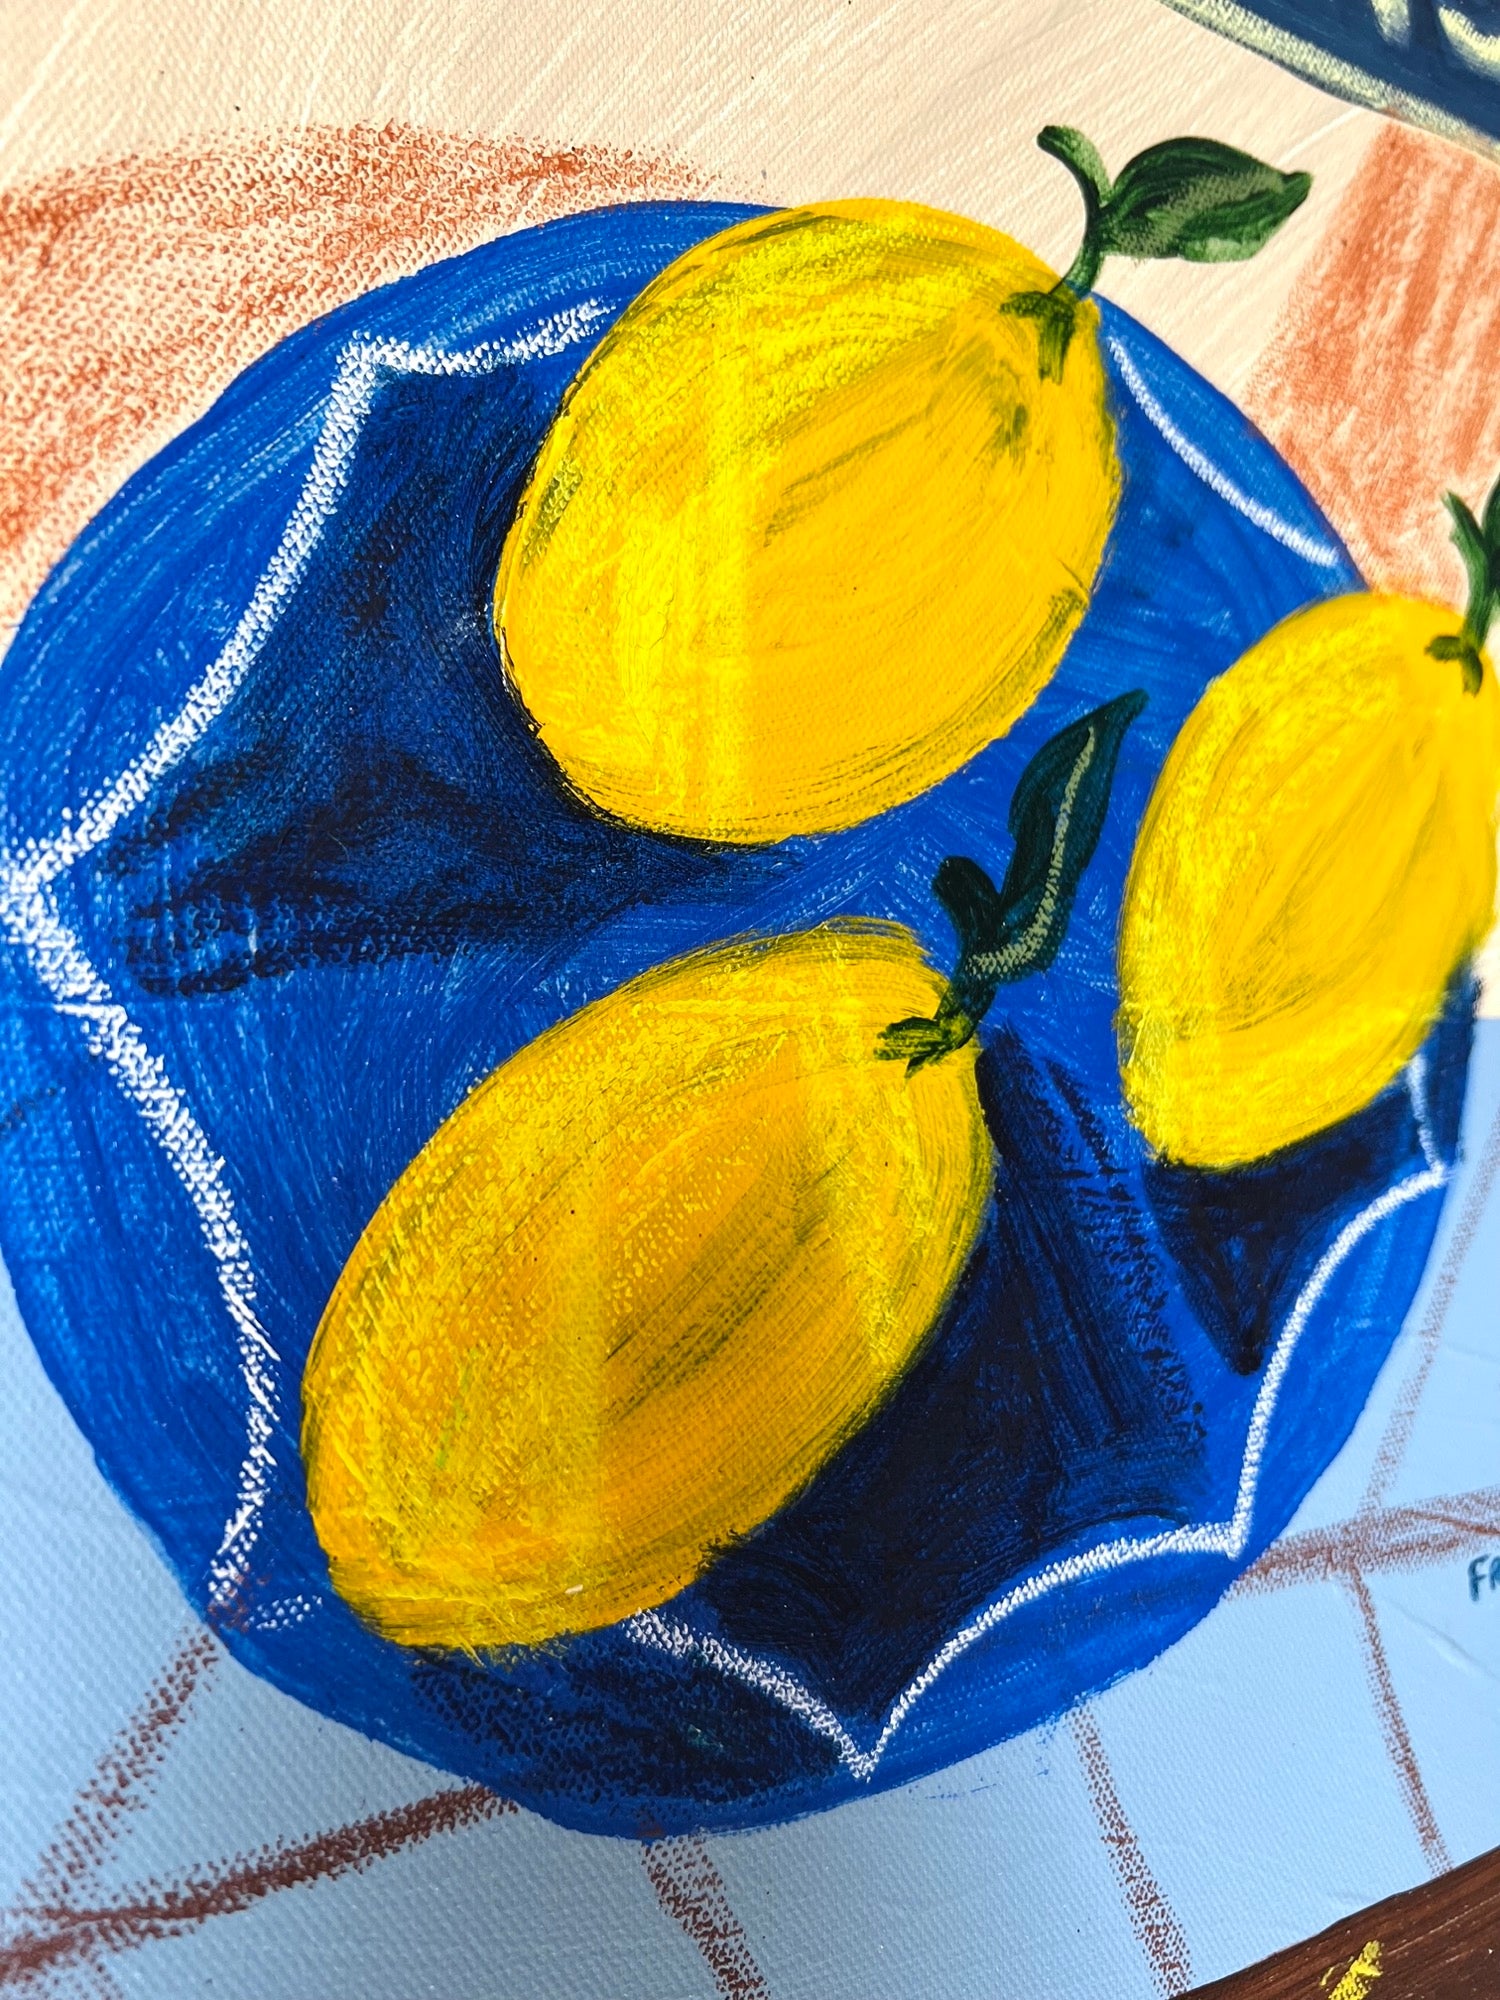 Lemons on blue plate